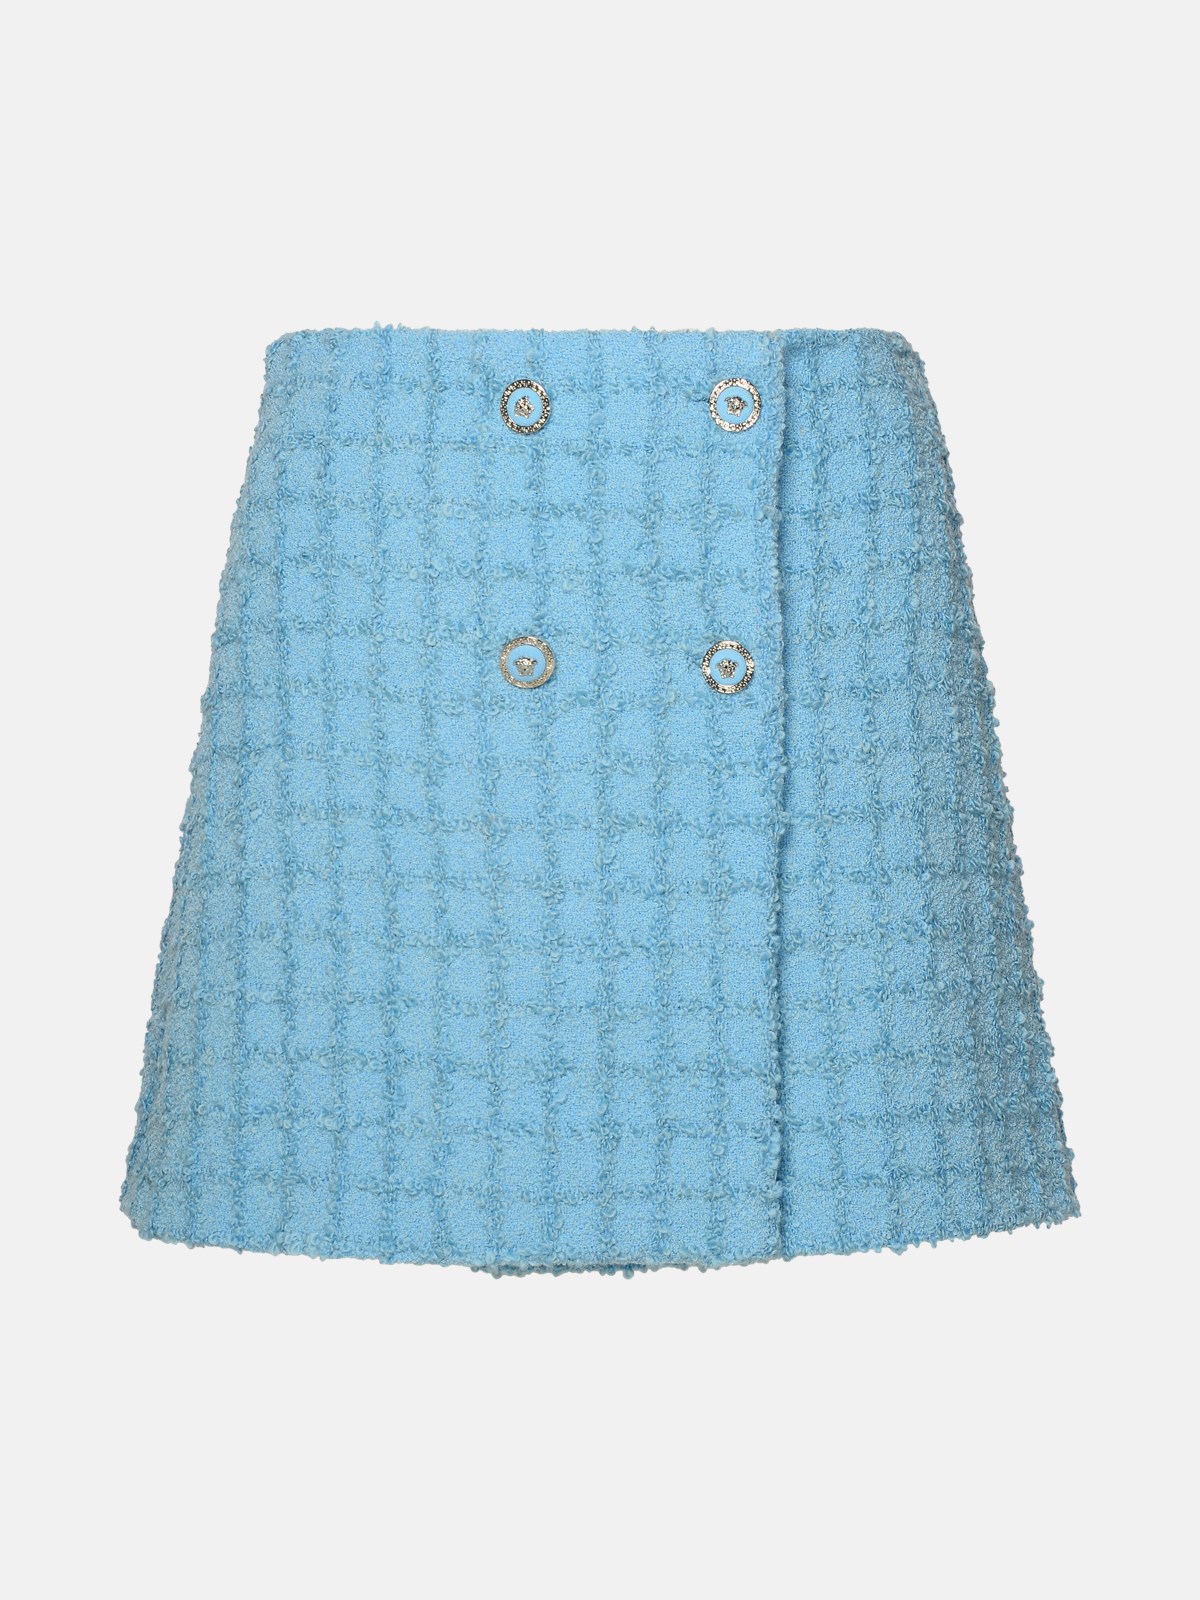 Versace Skirt In Light Blue Virgin Wool Blend